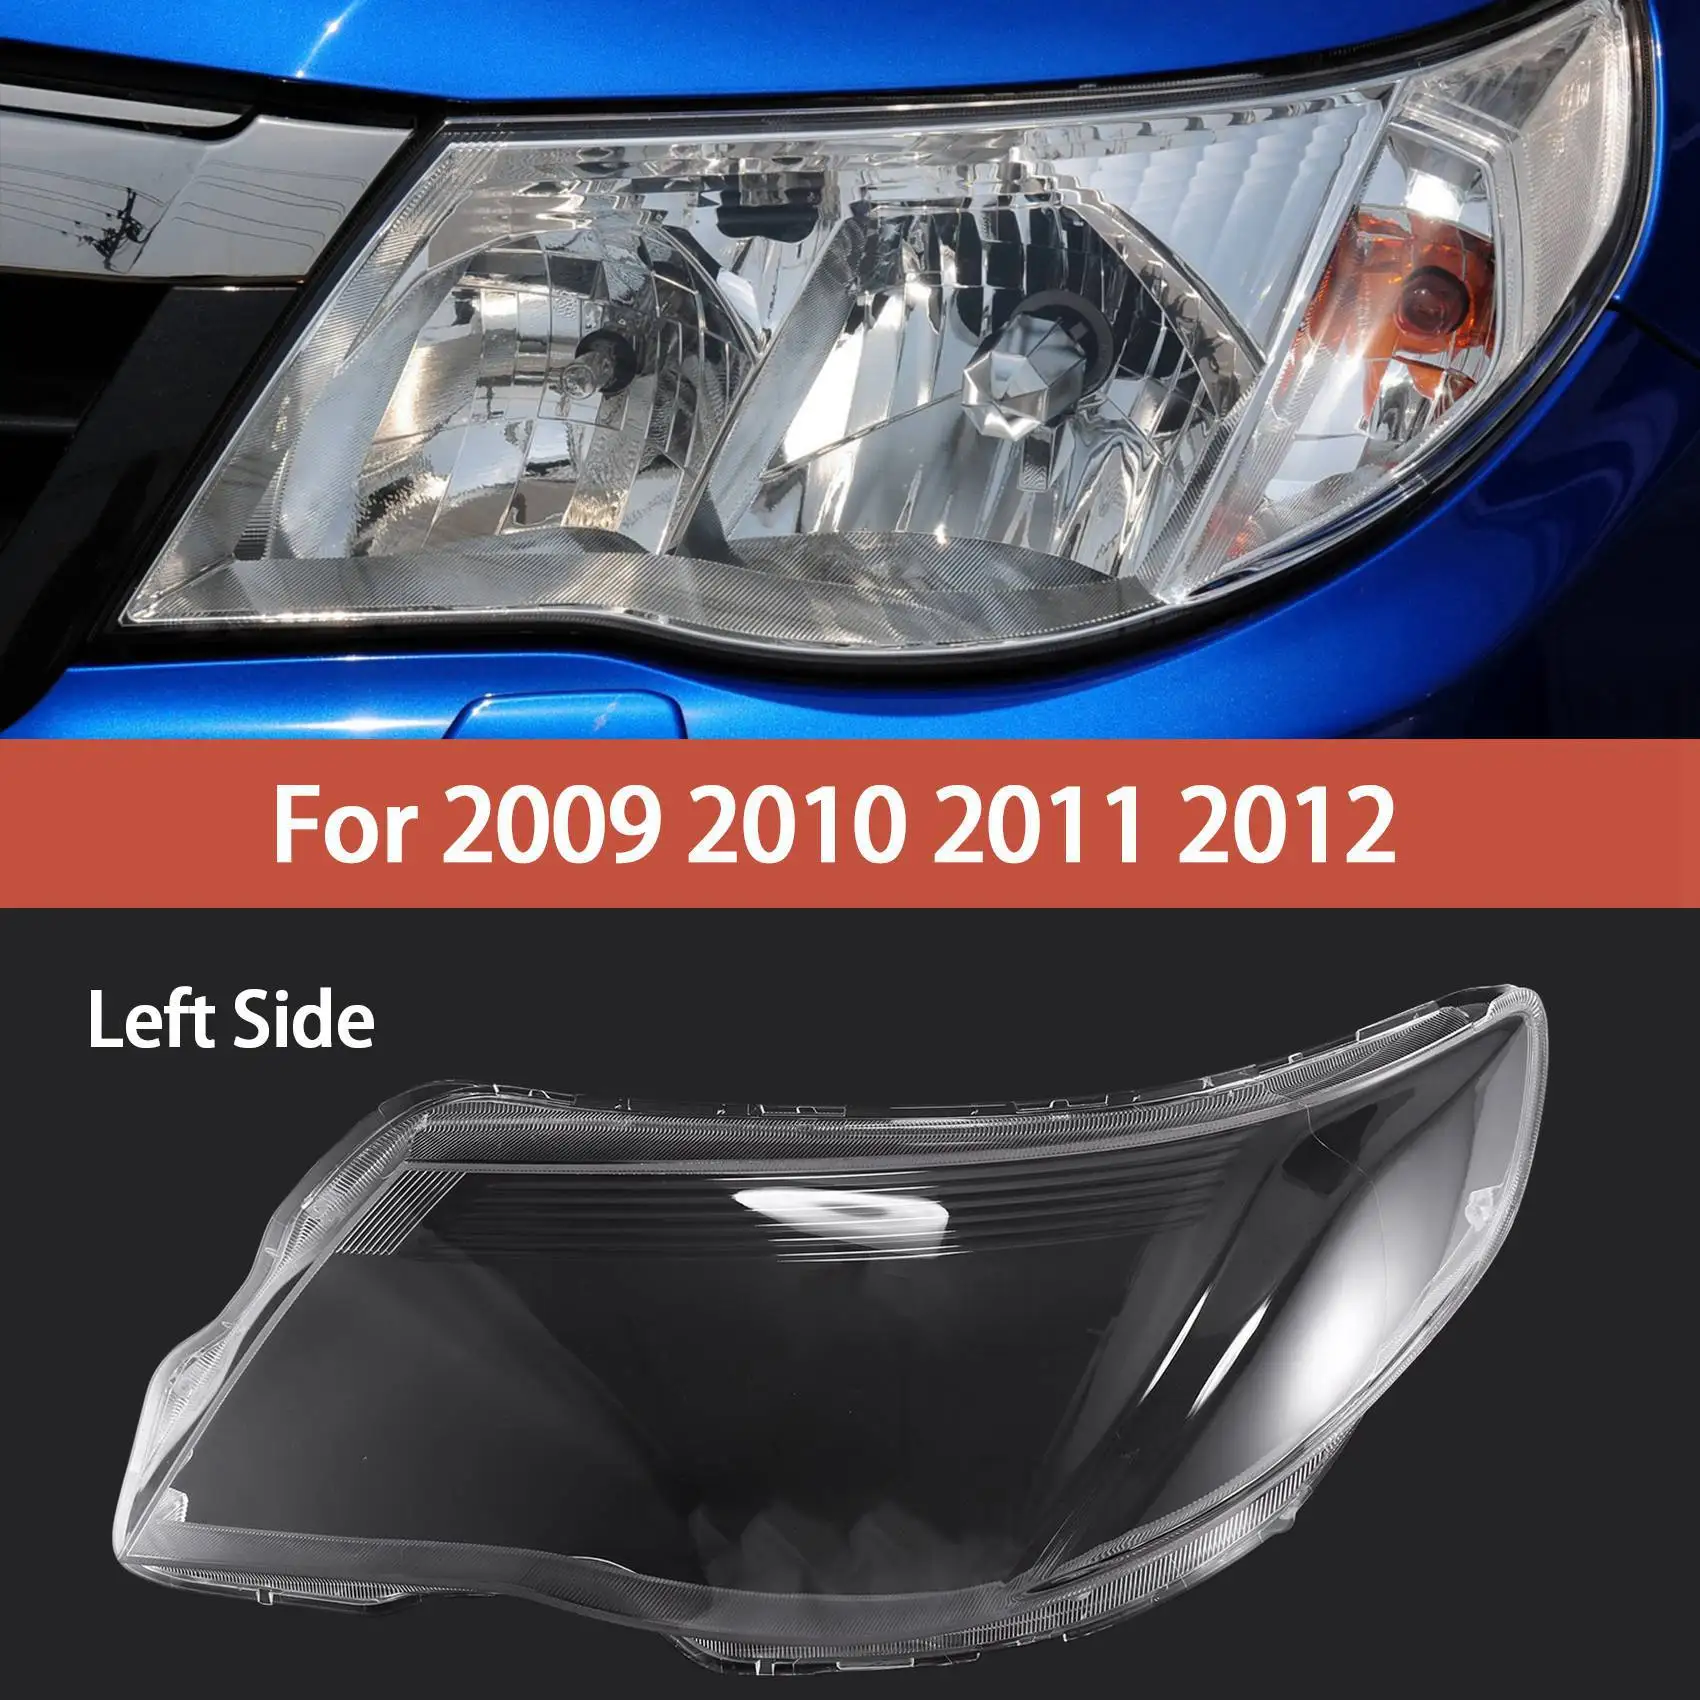 

Для Subaru Forester 2009, 2010, 2011, 2012, автомобильная головка, крышка объектива, головка, лампа, левая оболочка